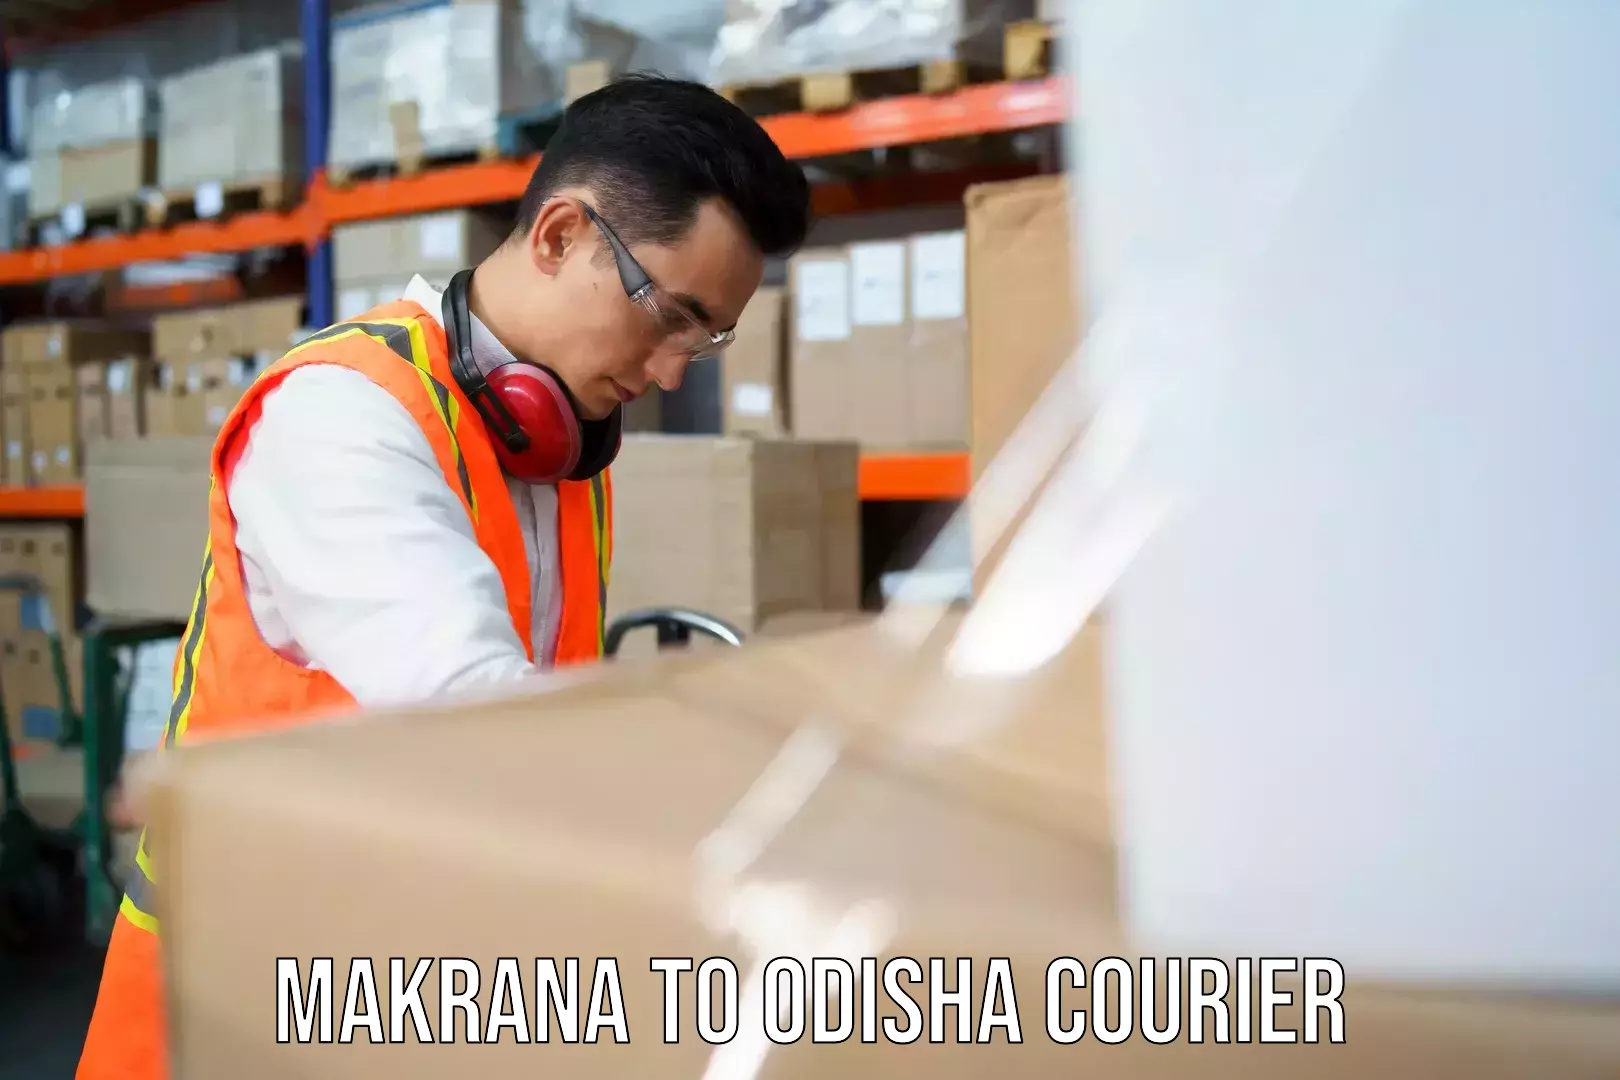 Courier service partnerships Makrana to Puri